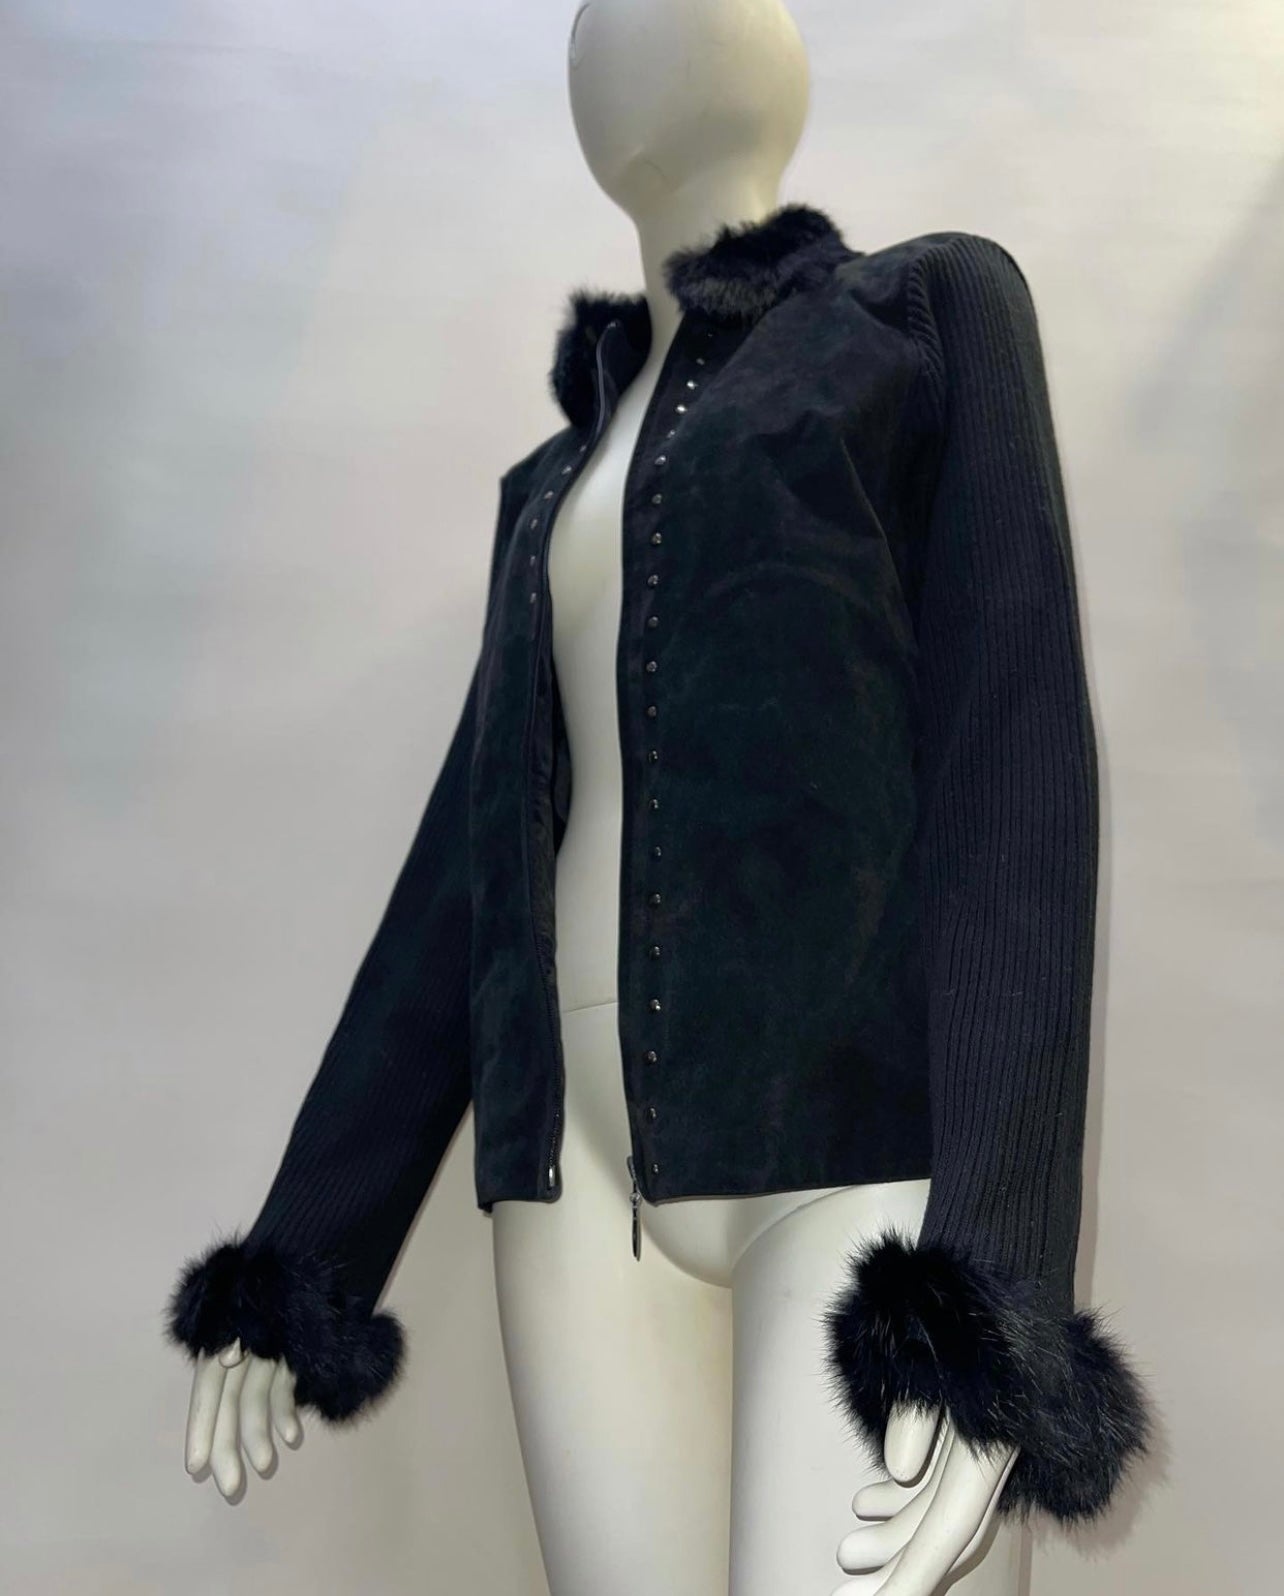 Vintage Jacket with Fur Cuffs + Collar